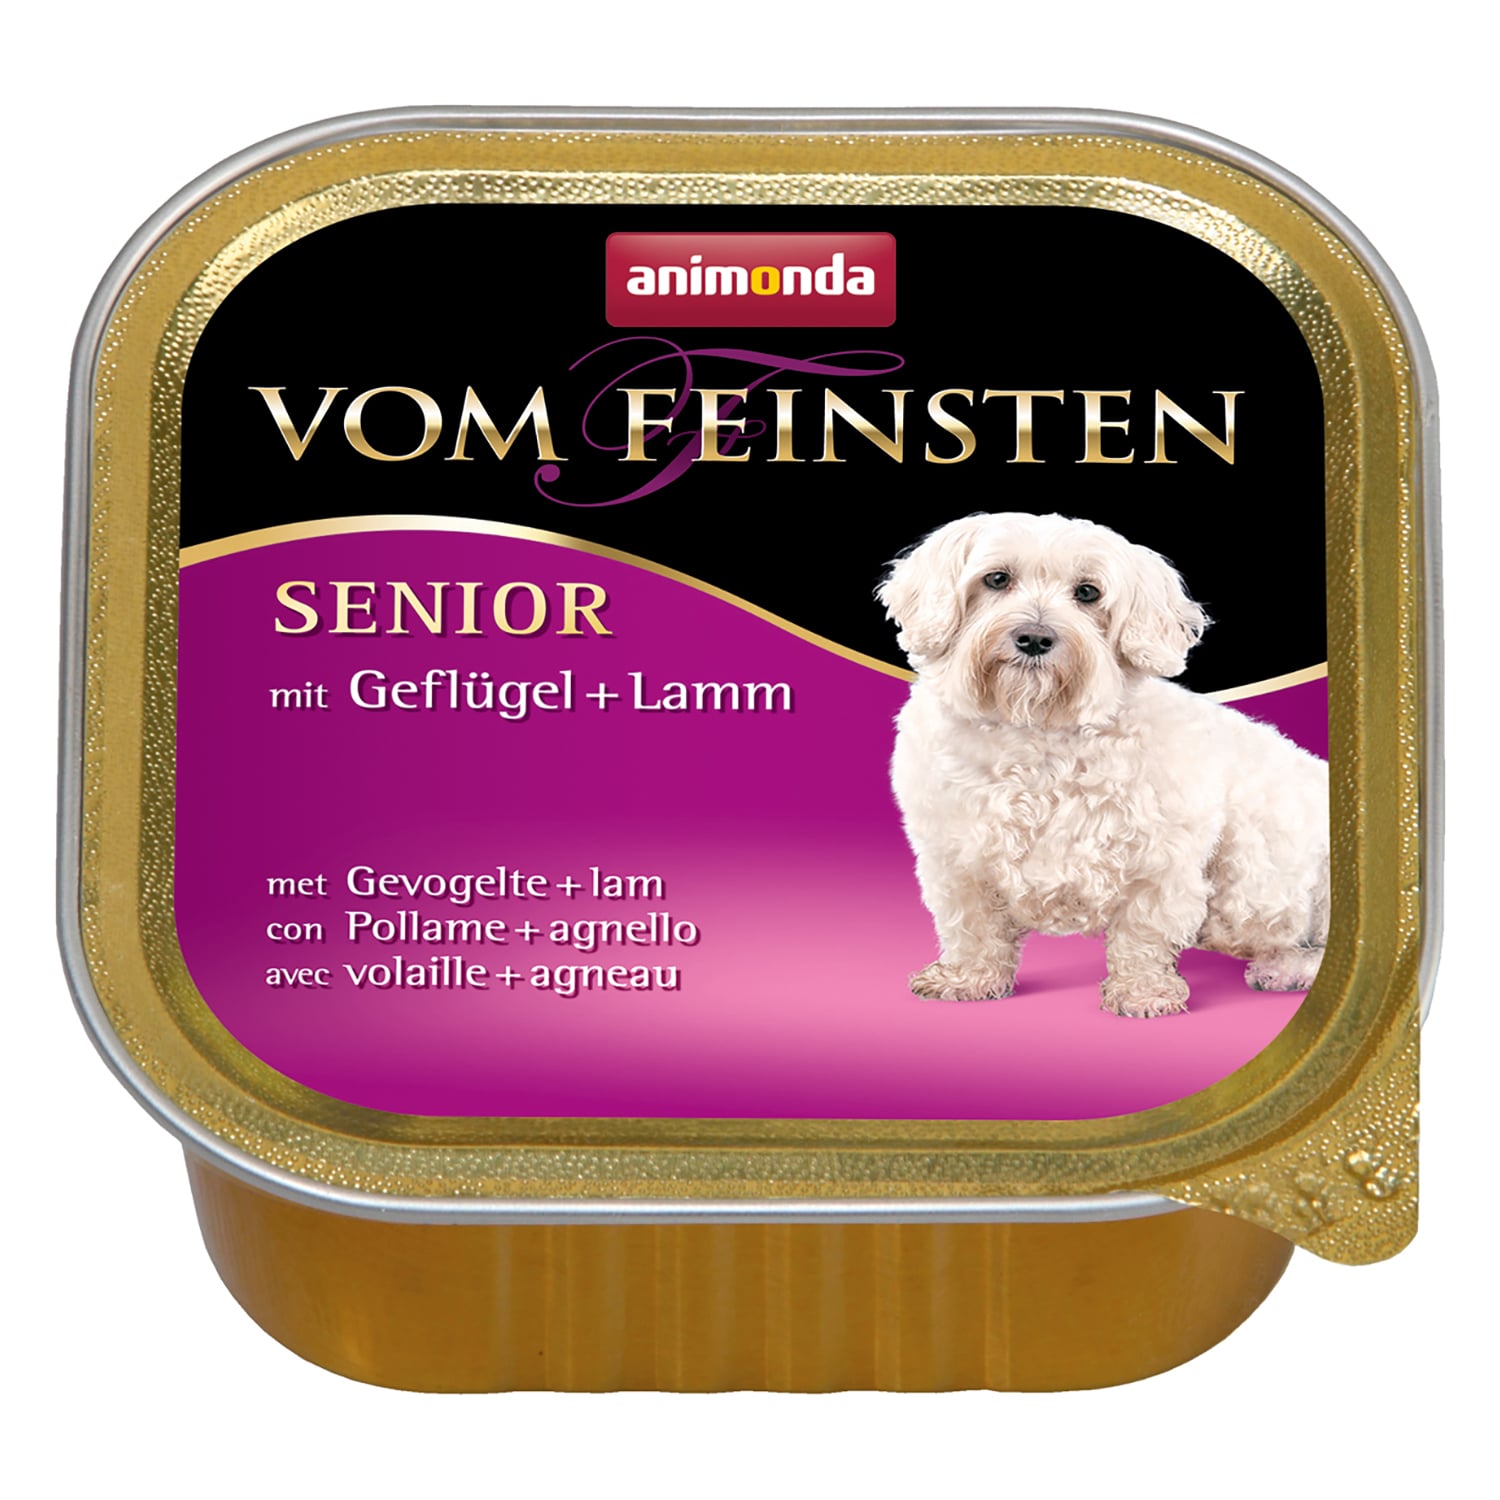 Vom Feinsten Senior консервы для собак старше 7 лет, с мясом домашней птицы и ягненком, Animonda